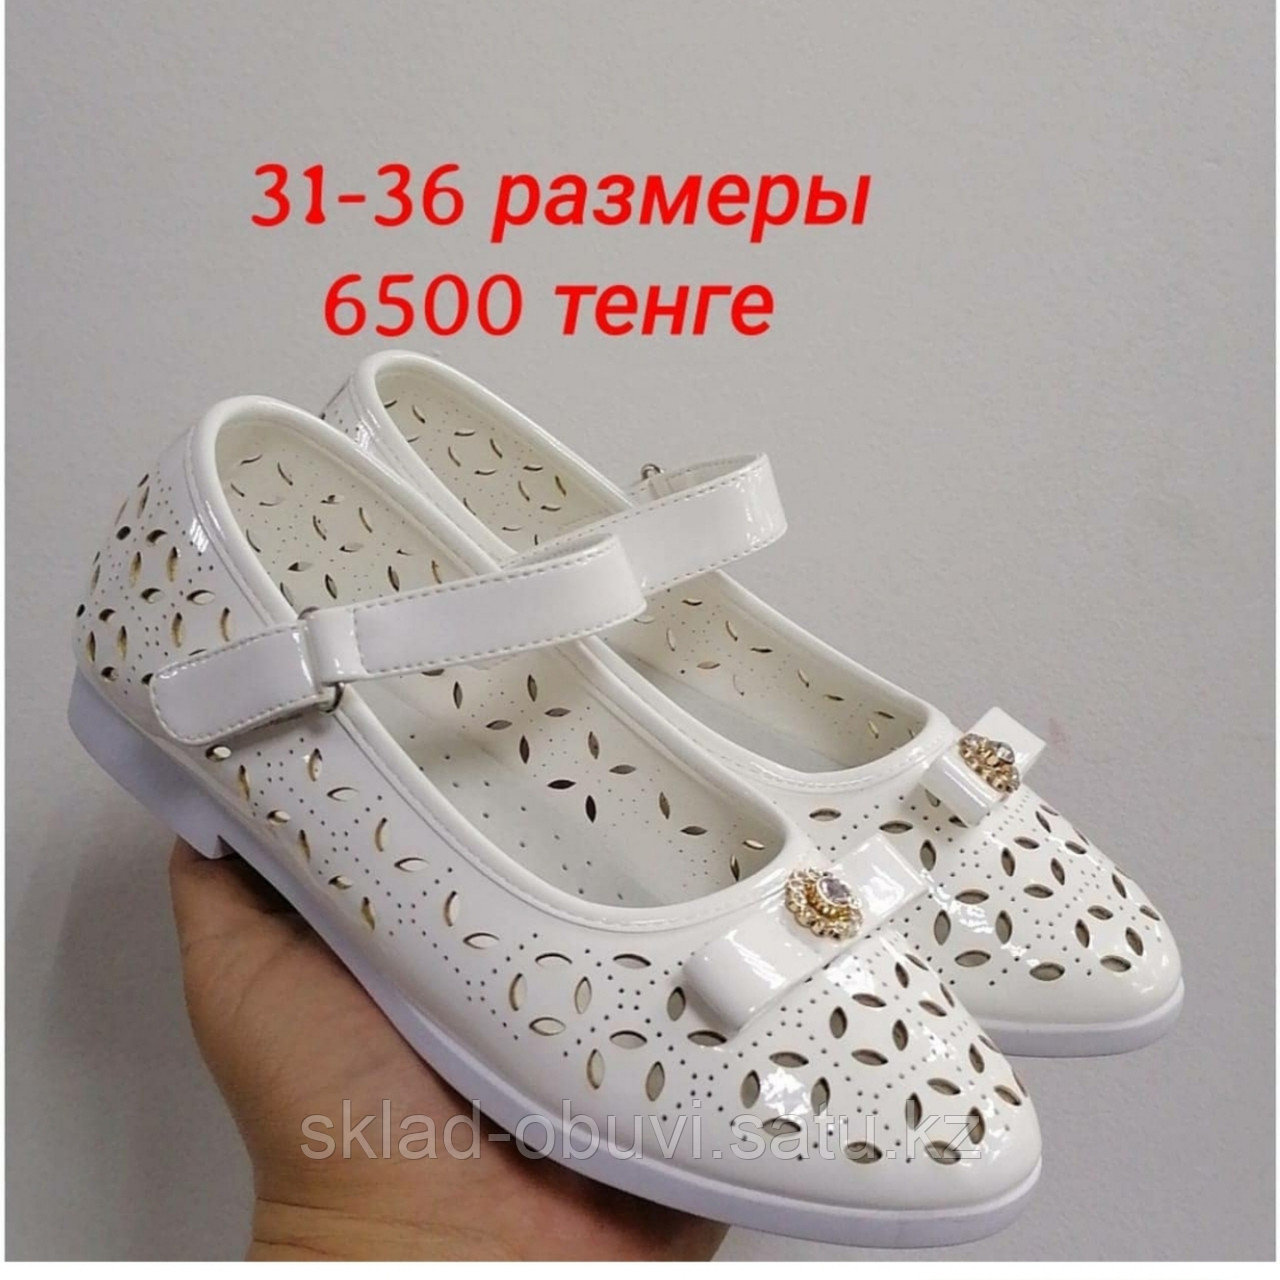 Белые туфли на девочку 31-36 размеры